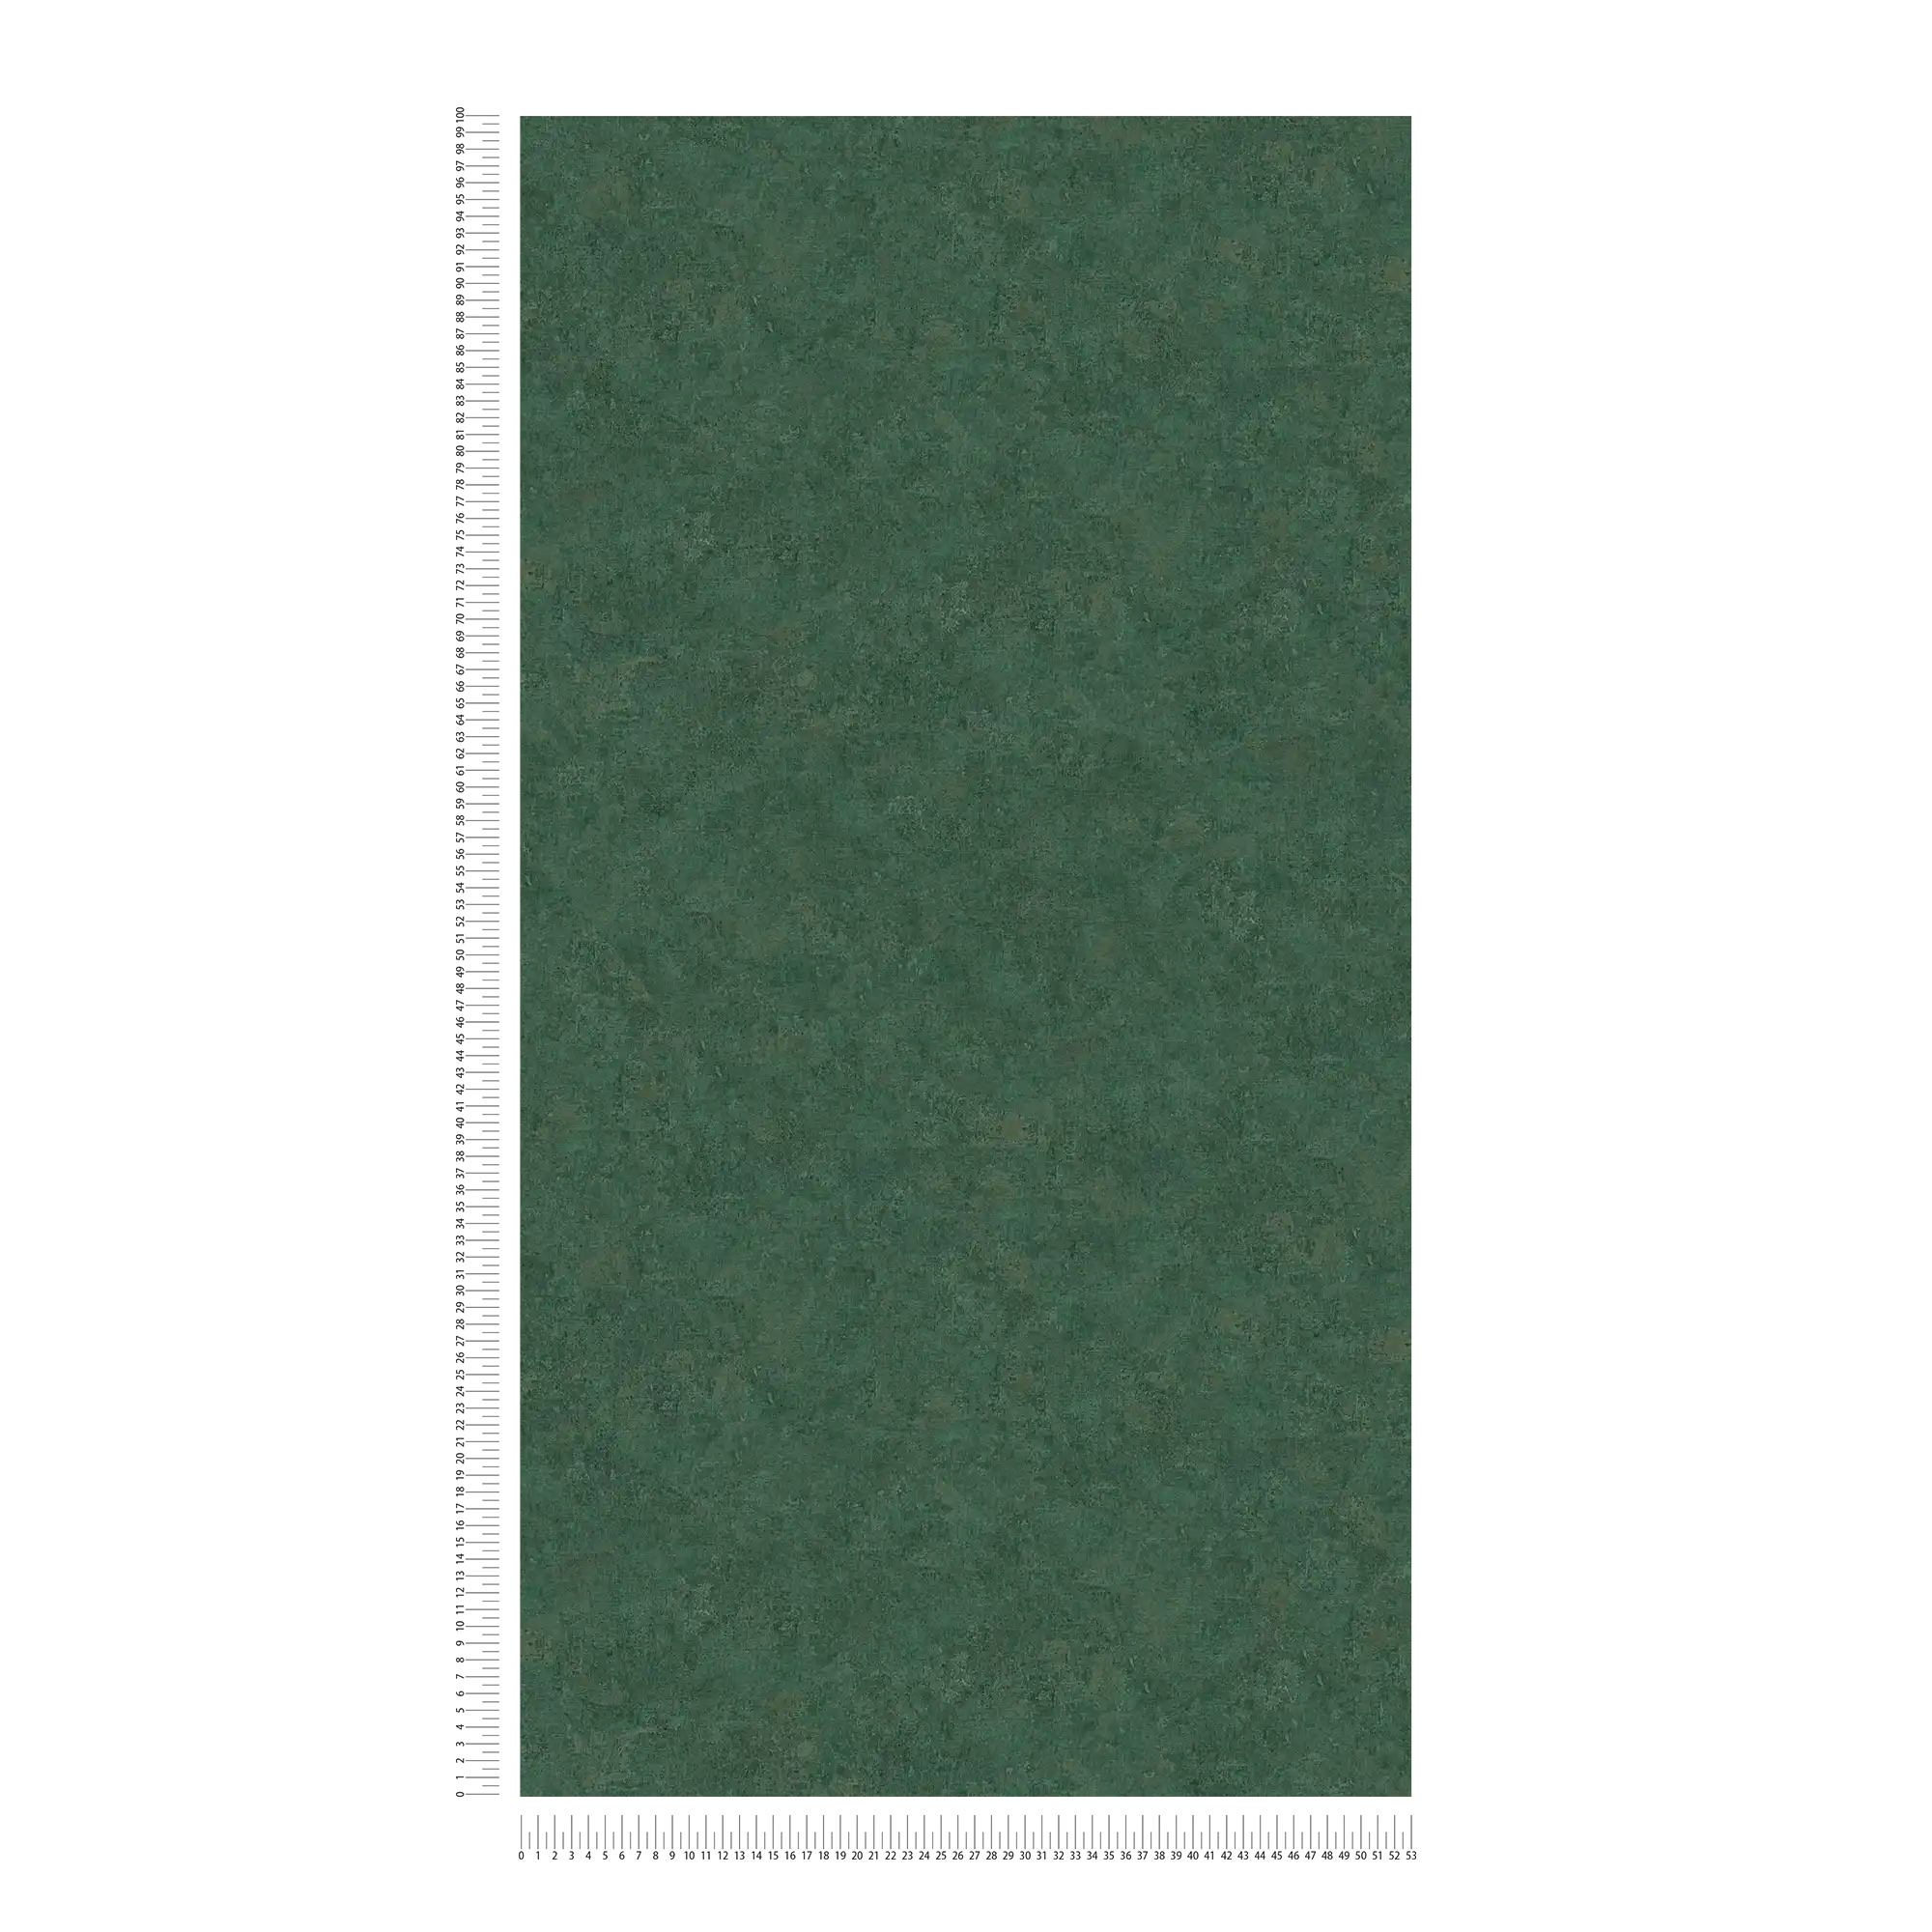             Carta da parati in tessuto non tessuto a tinta unita, motivi a colori e look vintage - verde
        